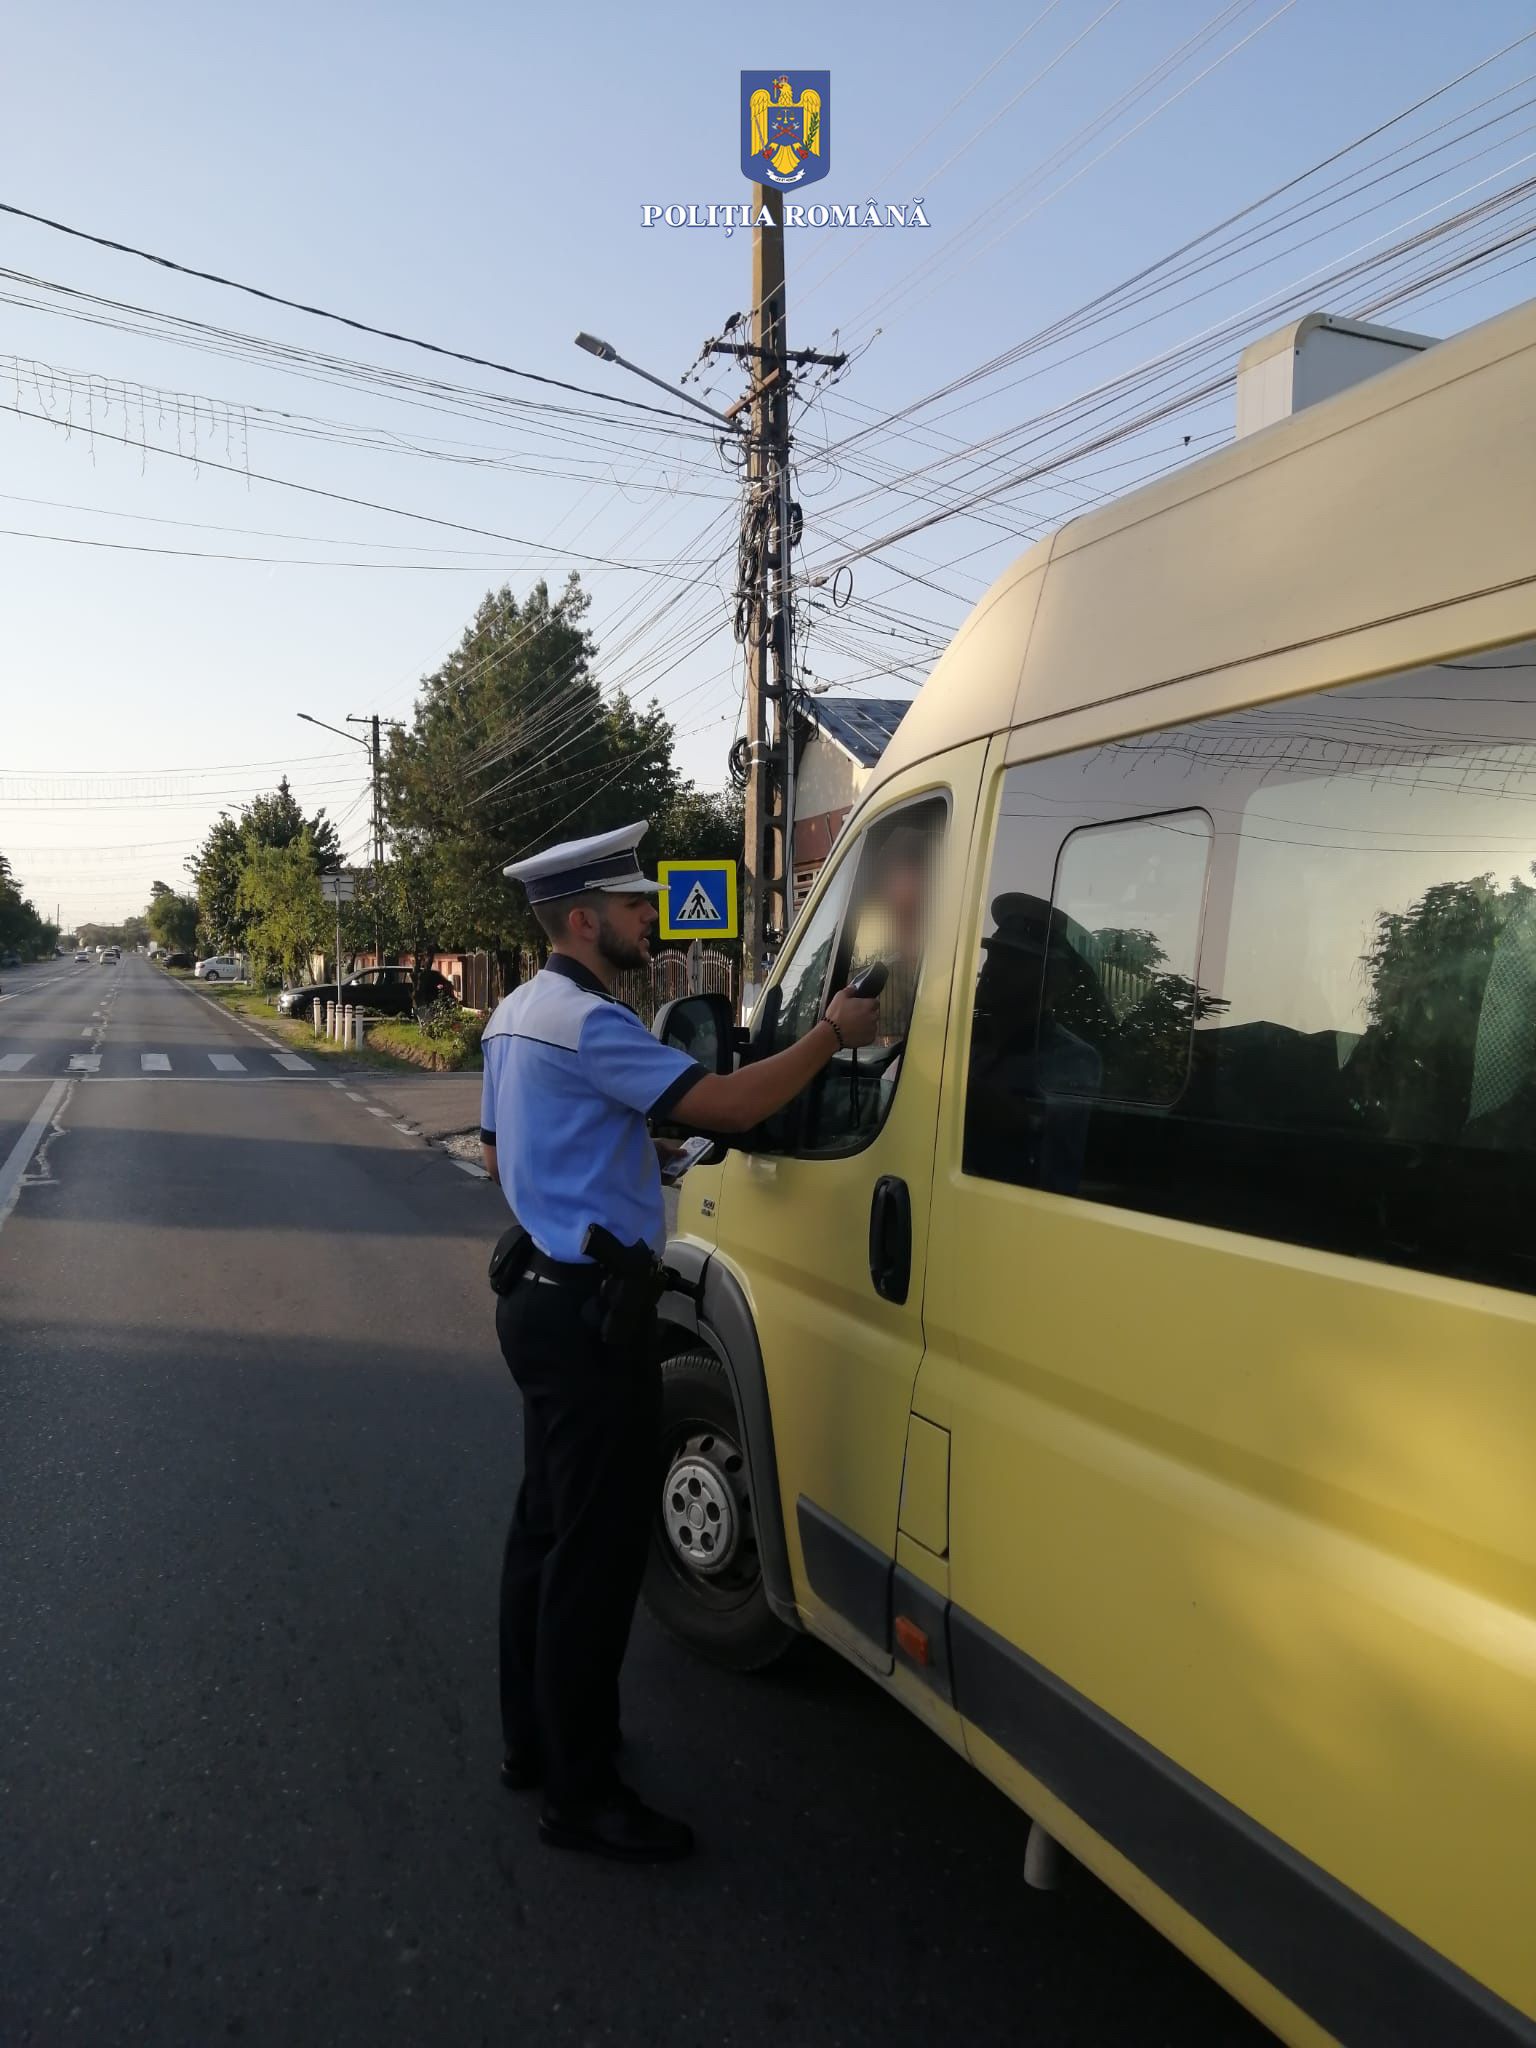 Siguranța elevilor pe drumurile publice, în atenția polițiștilor dâmbovițeni care în perioada 12-15 septembrie a.c., polițiștii de la rutieră